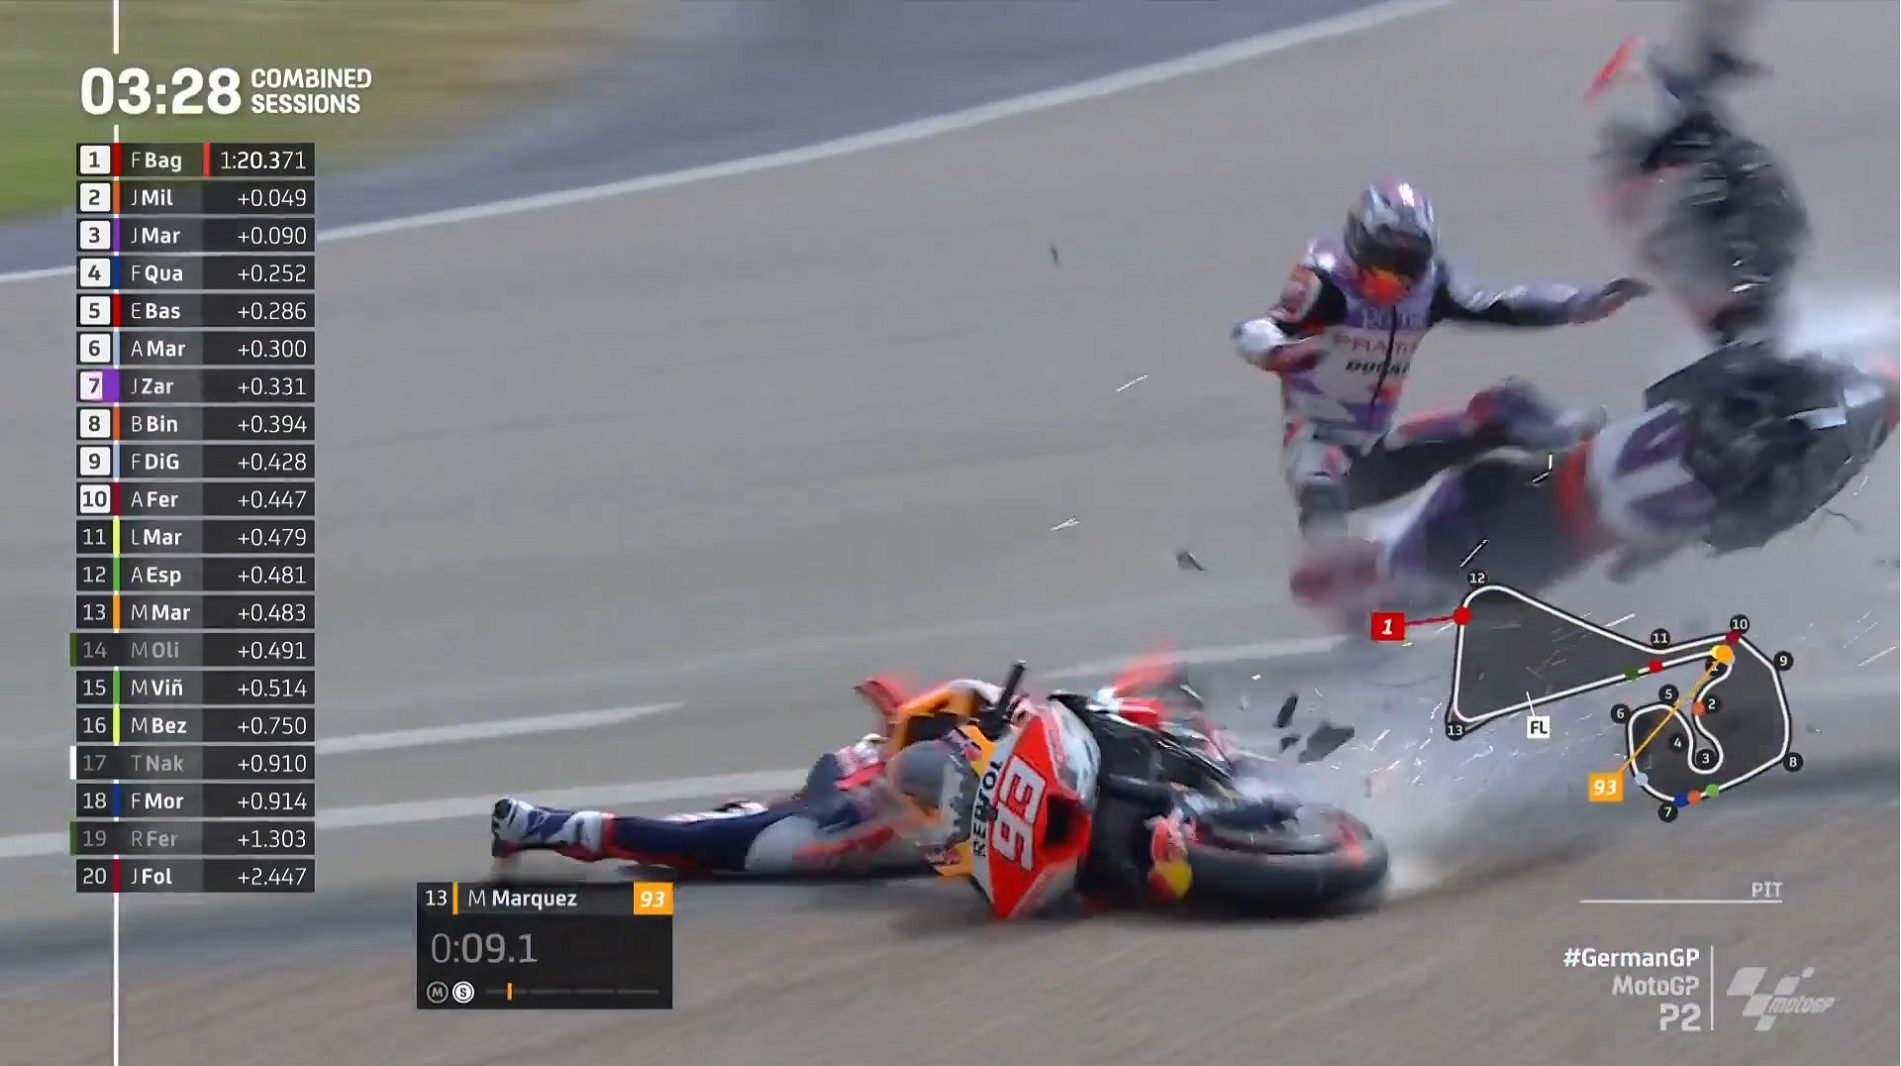 Acidente envolve dois pilotos durante corrida MotoGP - Foto: Reprodução/ Twitter @MotoGP